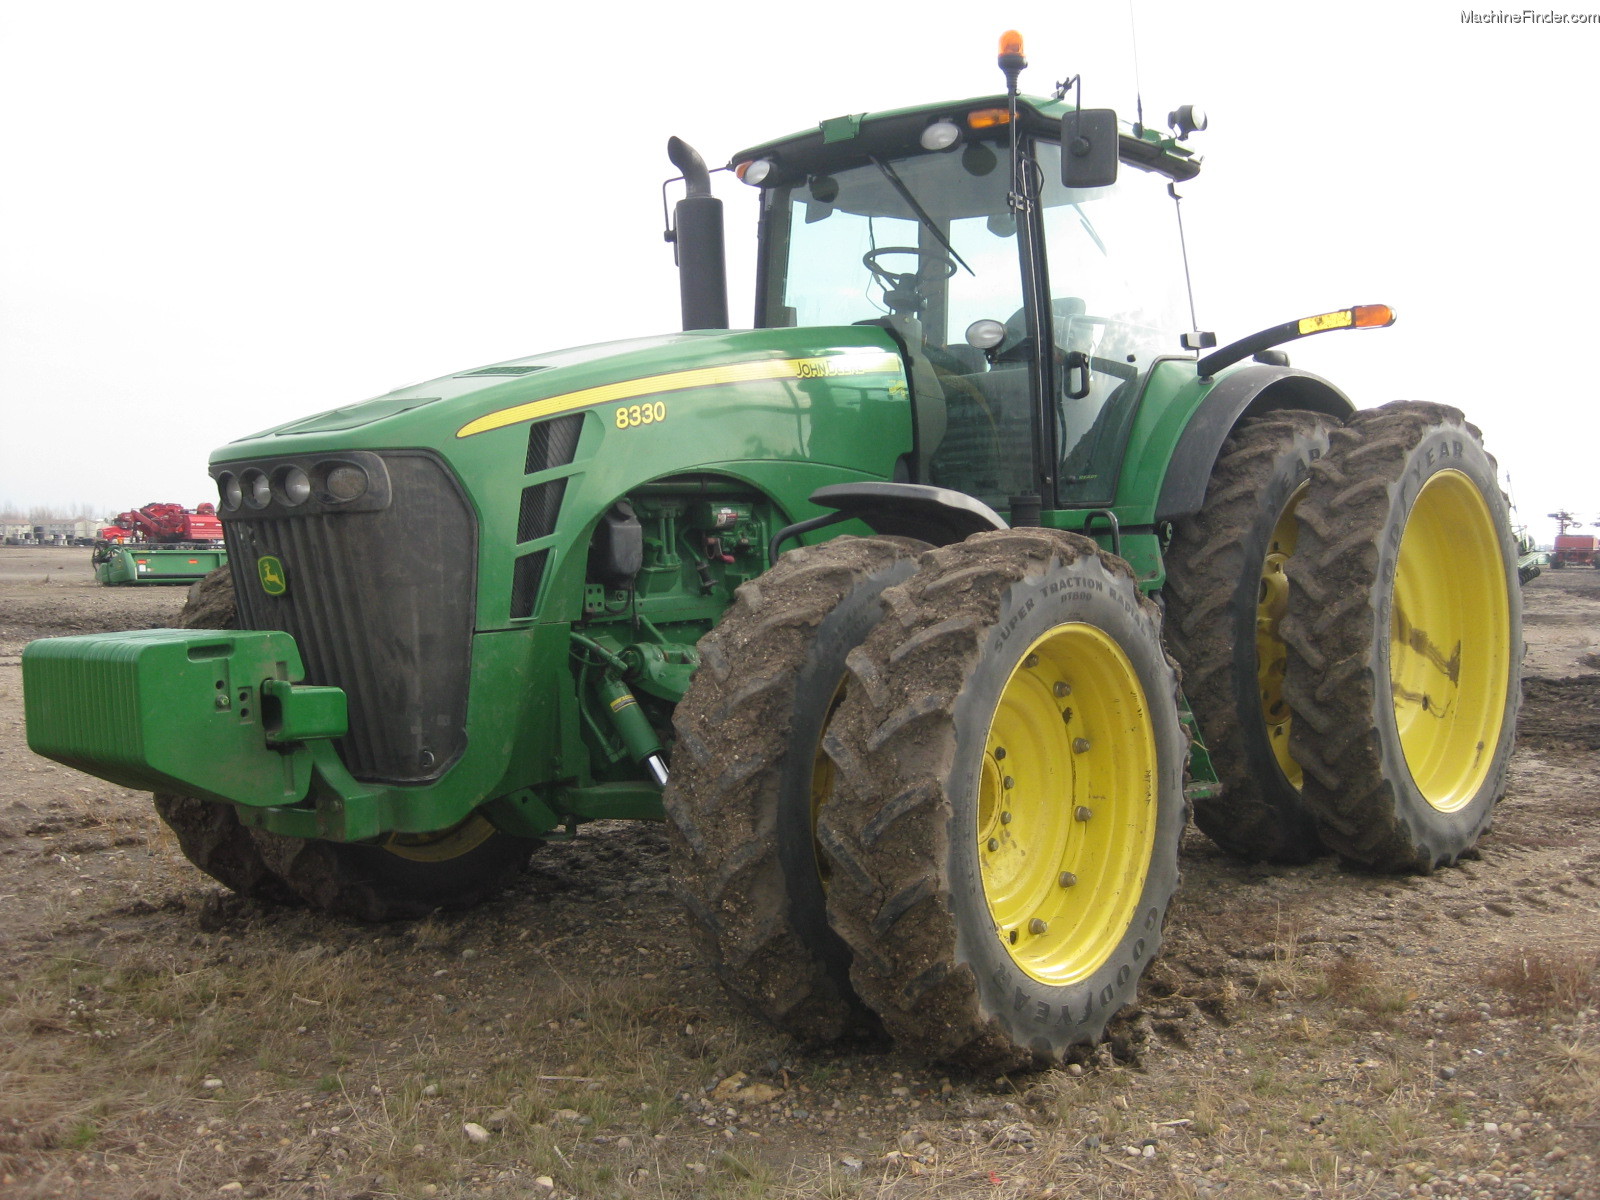 2007 John Deere 8330 Tractors - Row Crop (+100hp) - John Deere ...